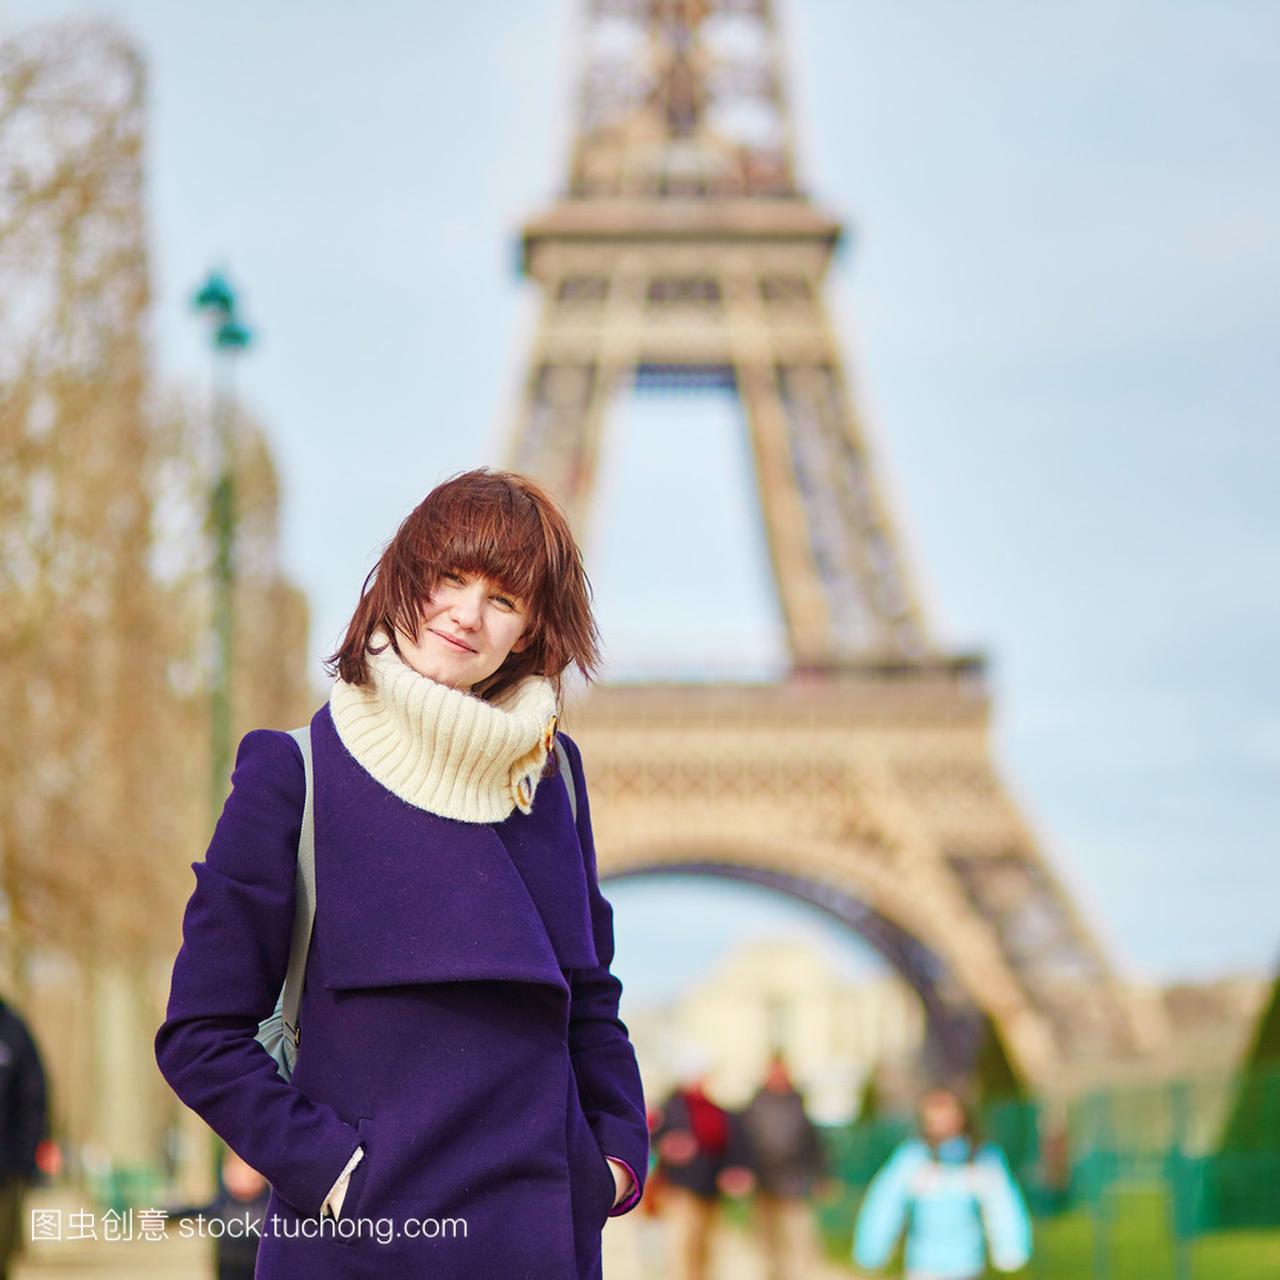 在巴黎埃菲尔铁塔附近的美丽旅游